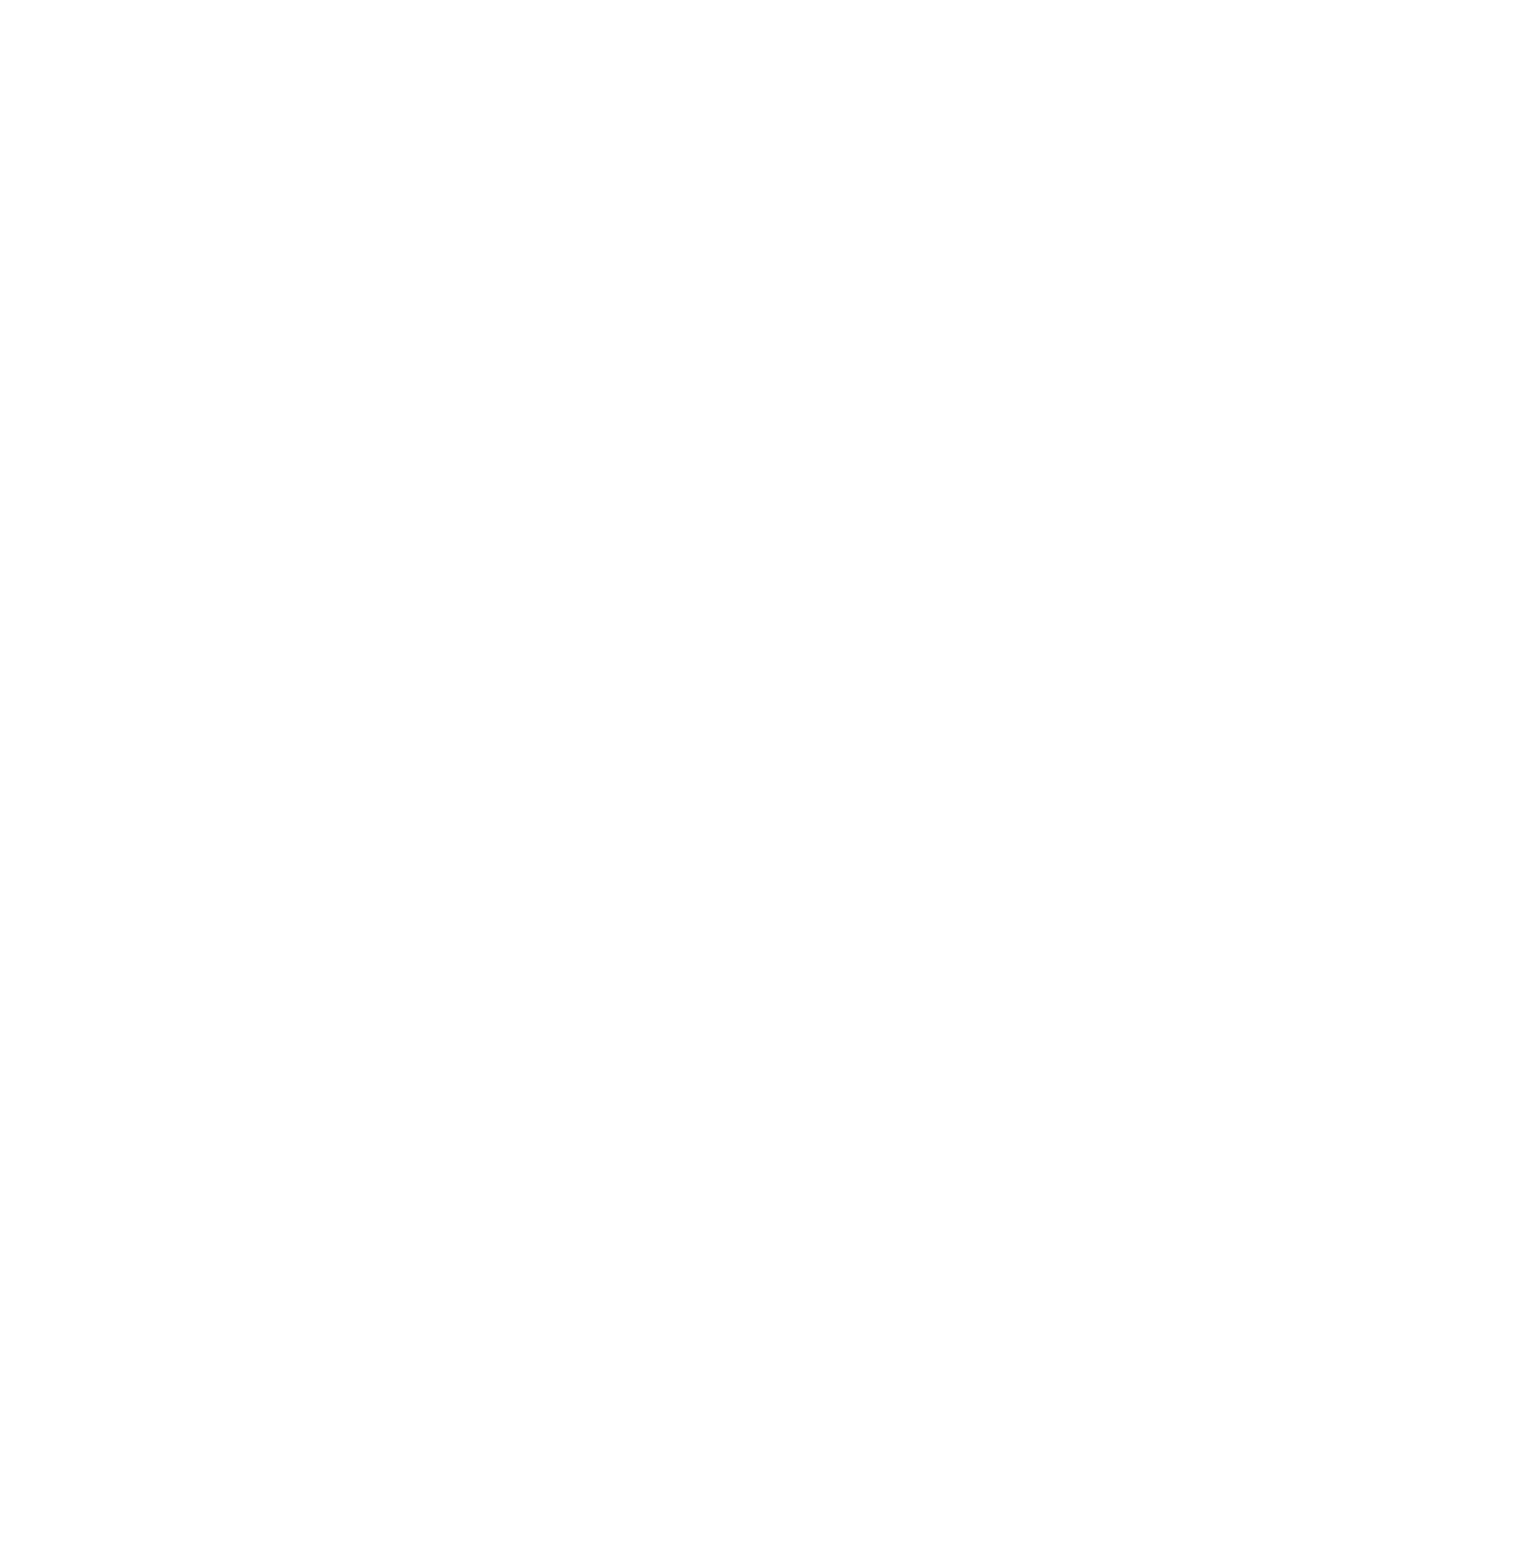 KORU Medical Systems logo for dark backgrounds (transparent PNG)